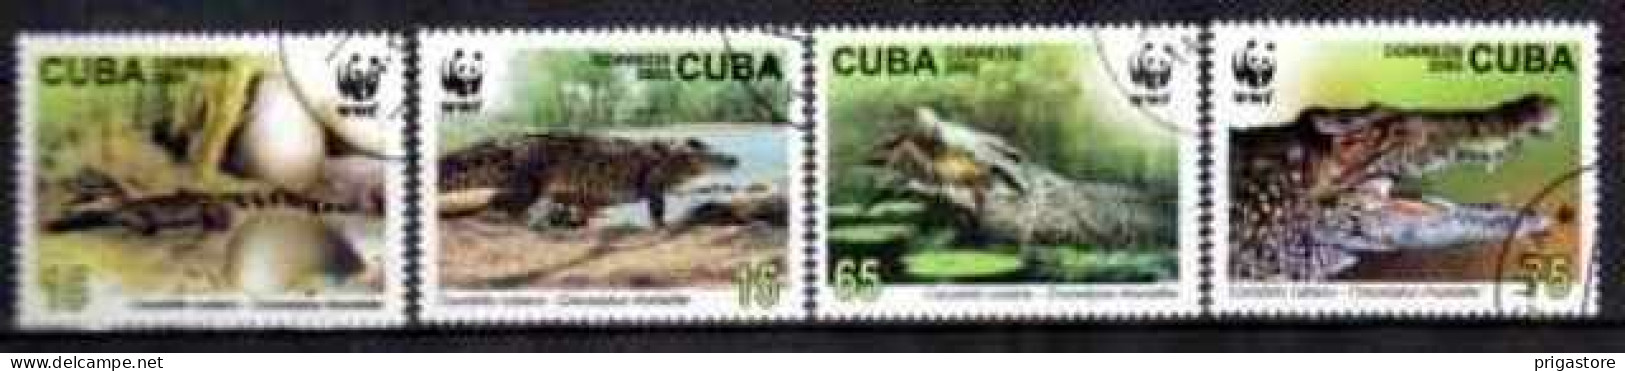 Cuba 2003 Animaux Crocodiles (19) Yvert N° 4117 à 4120 Oblitéré Used - Usados